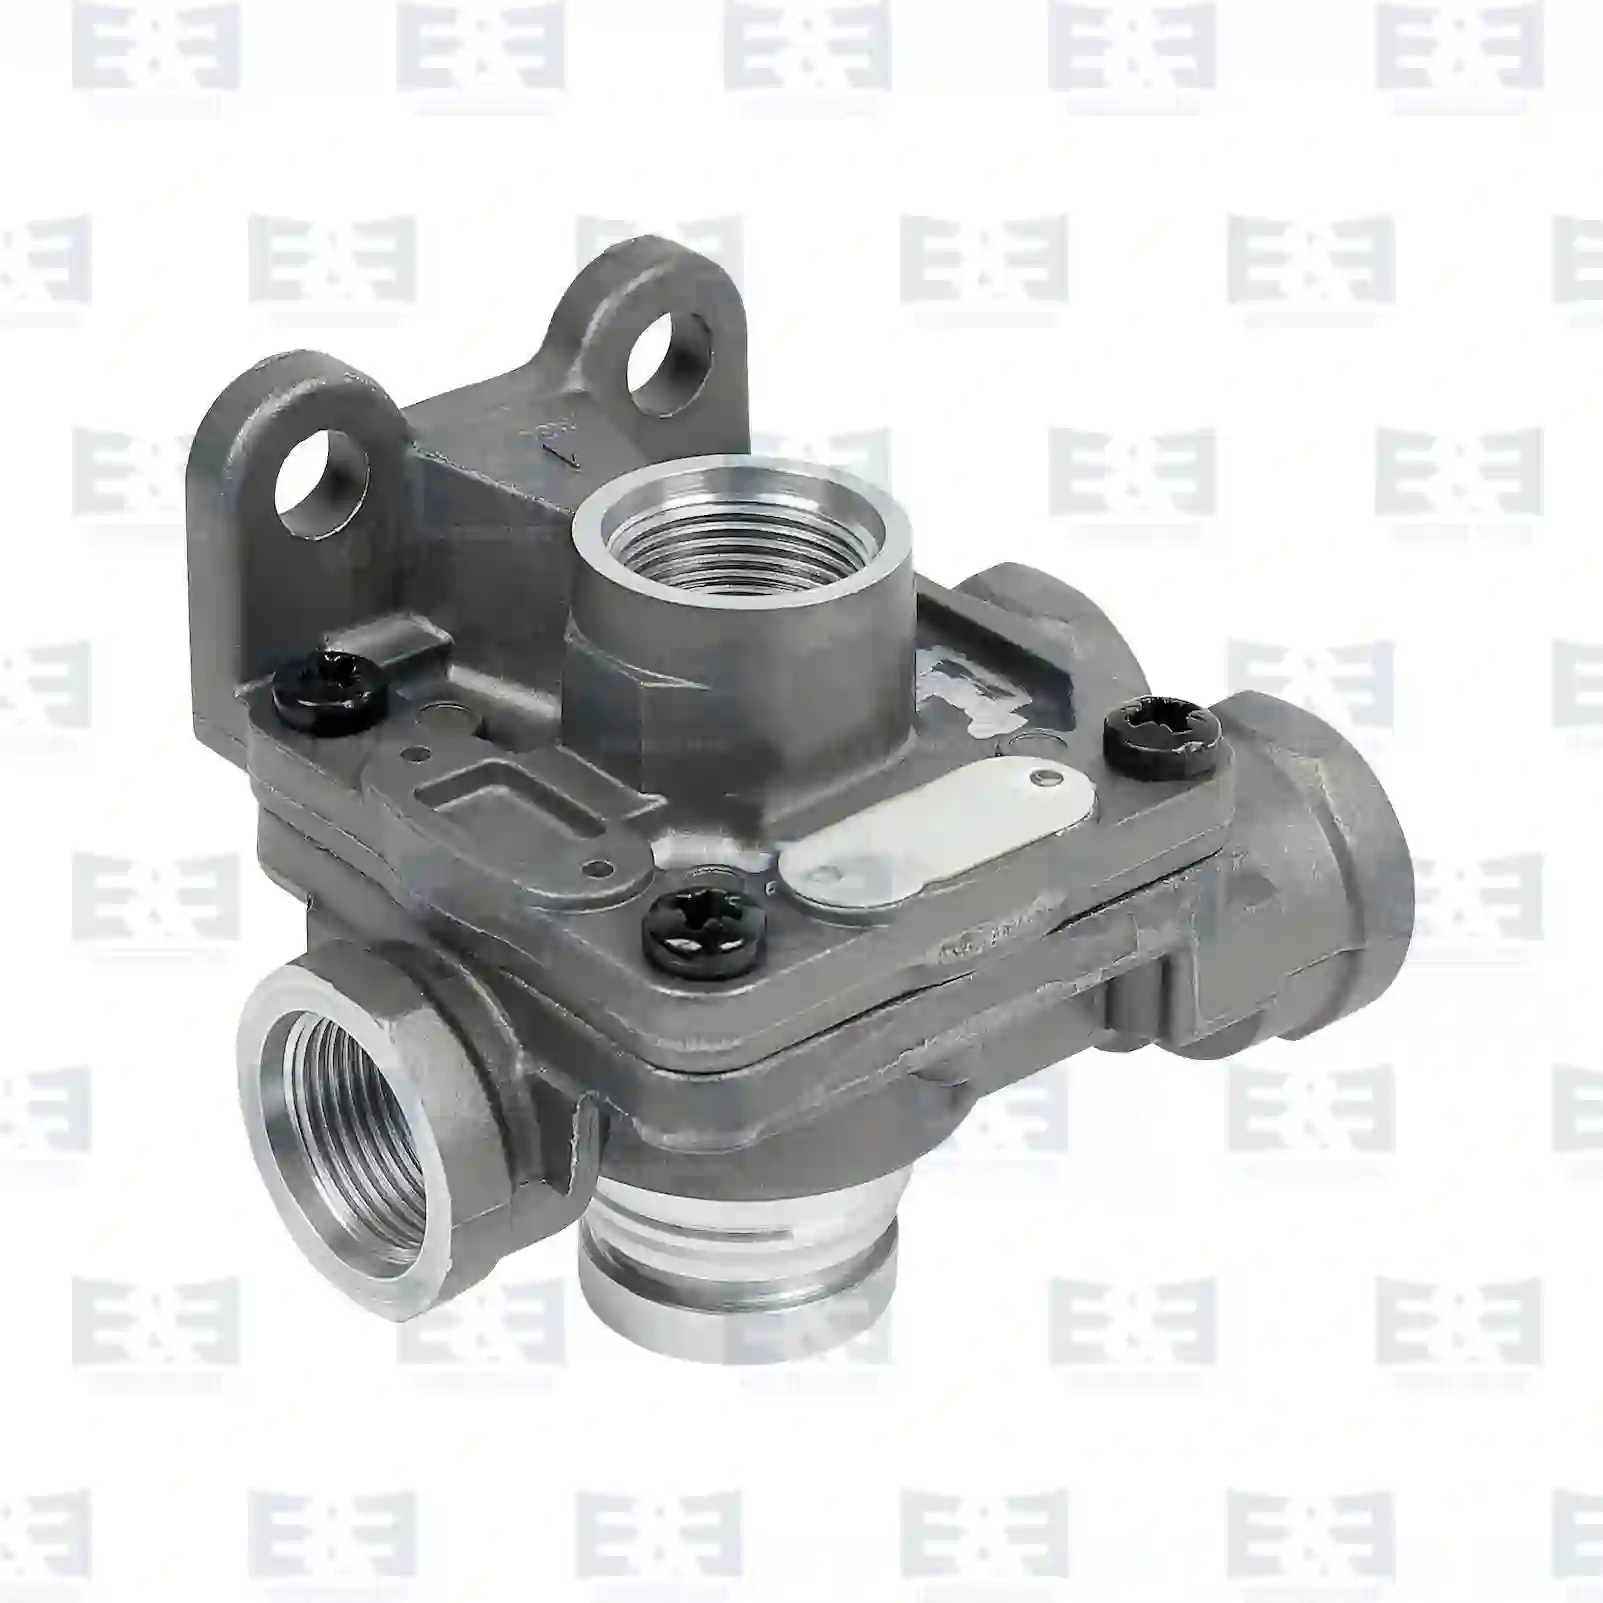  Quick release valve || E&E Truck Spare Parts | Truck Spare Parts, Auotomotive Spare Parts